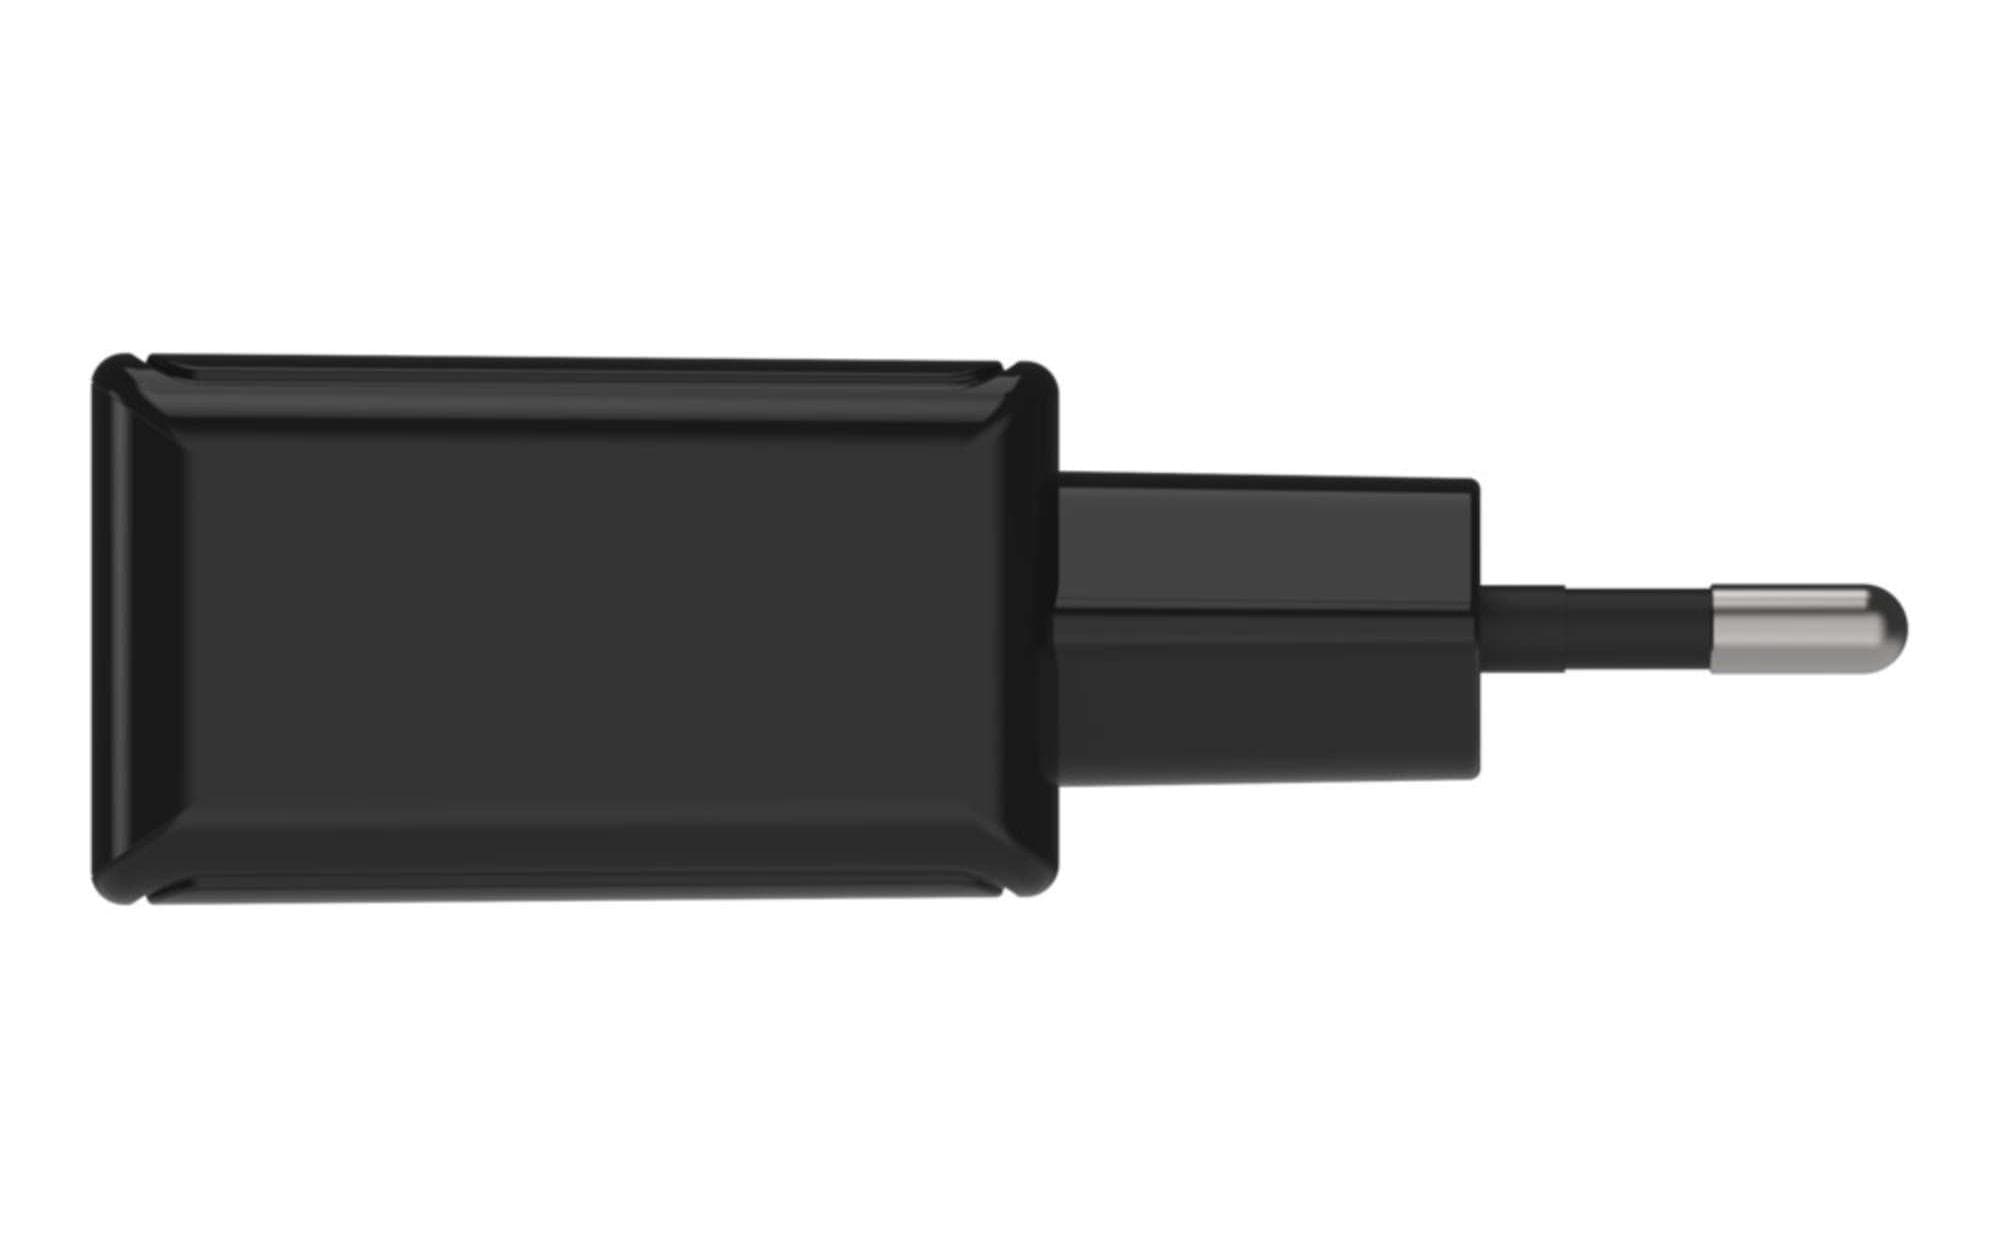 Ansmann USB-Wandladegerät Home Charger HC218PD, 18 W, Schwarz